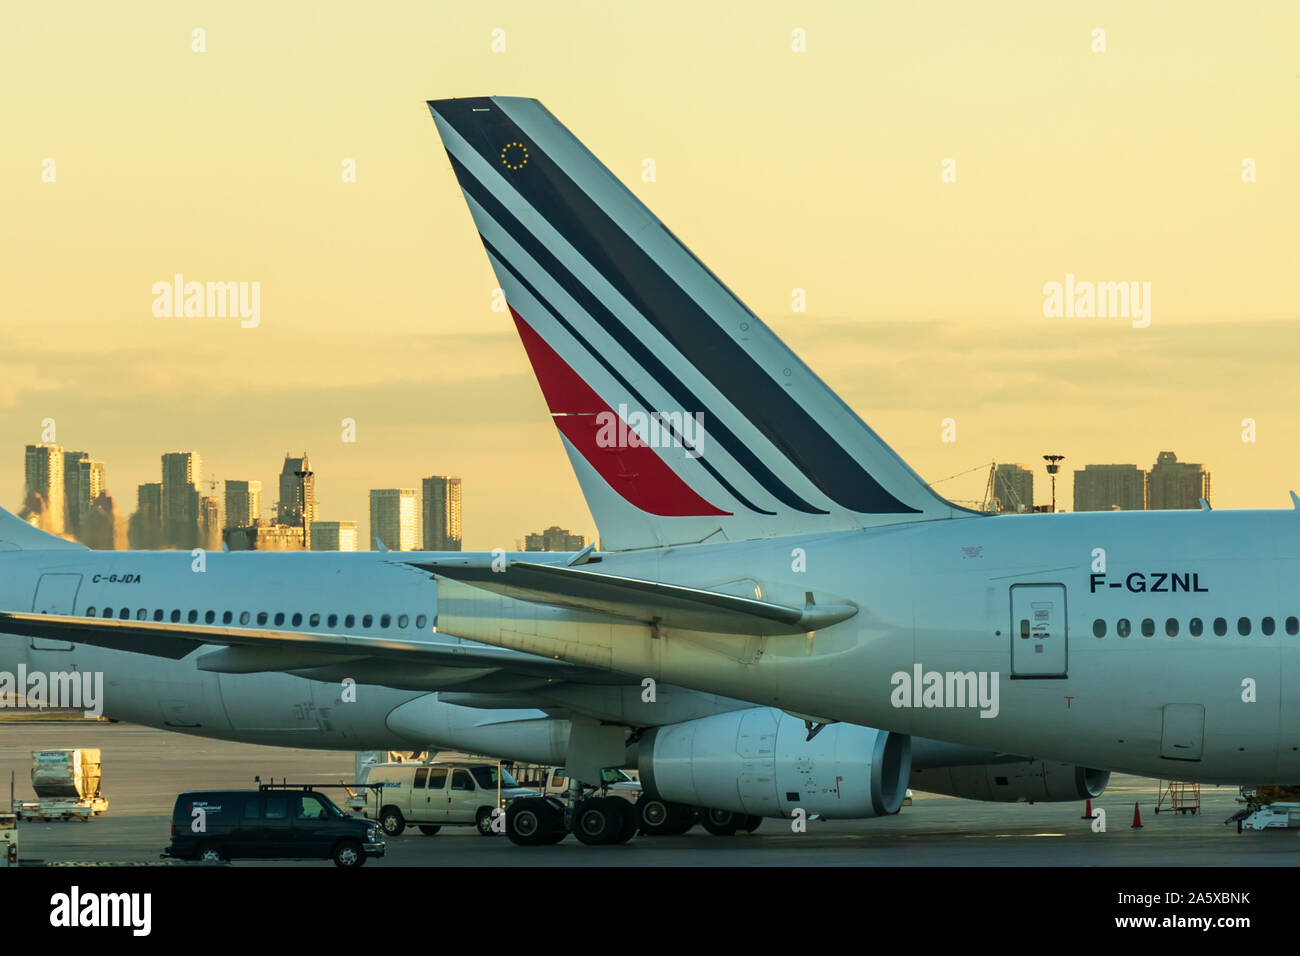 Air France réaménage ses Boeing 777 réservés aux lignes réunionnaises